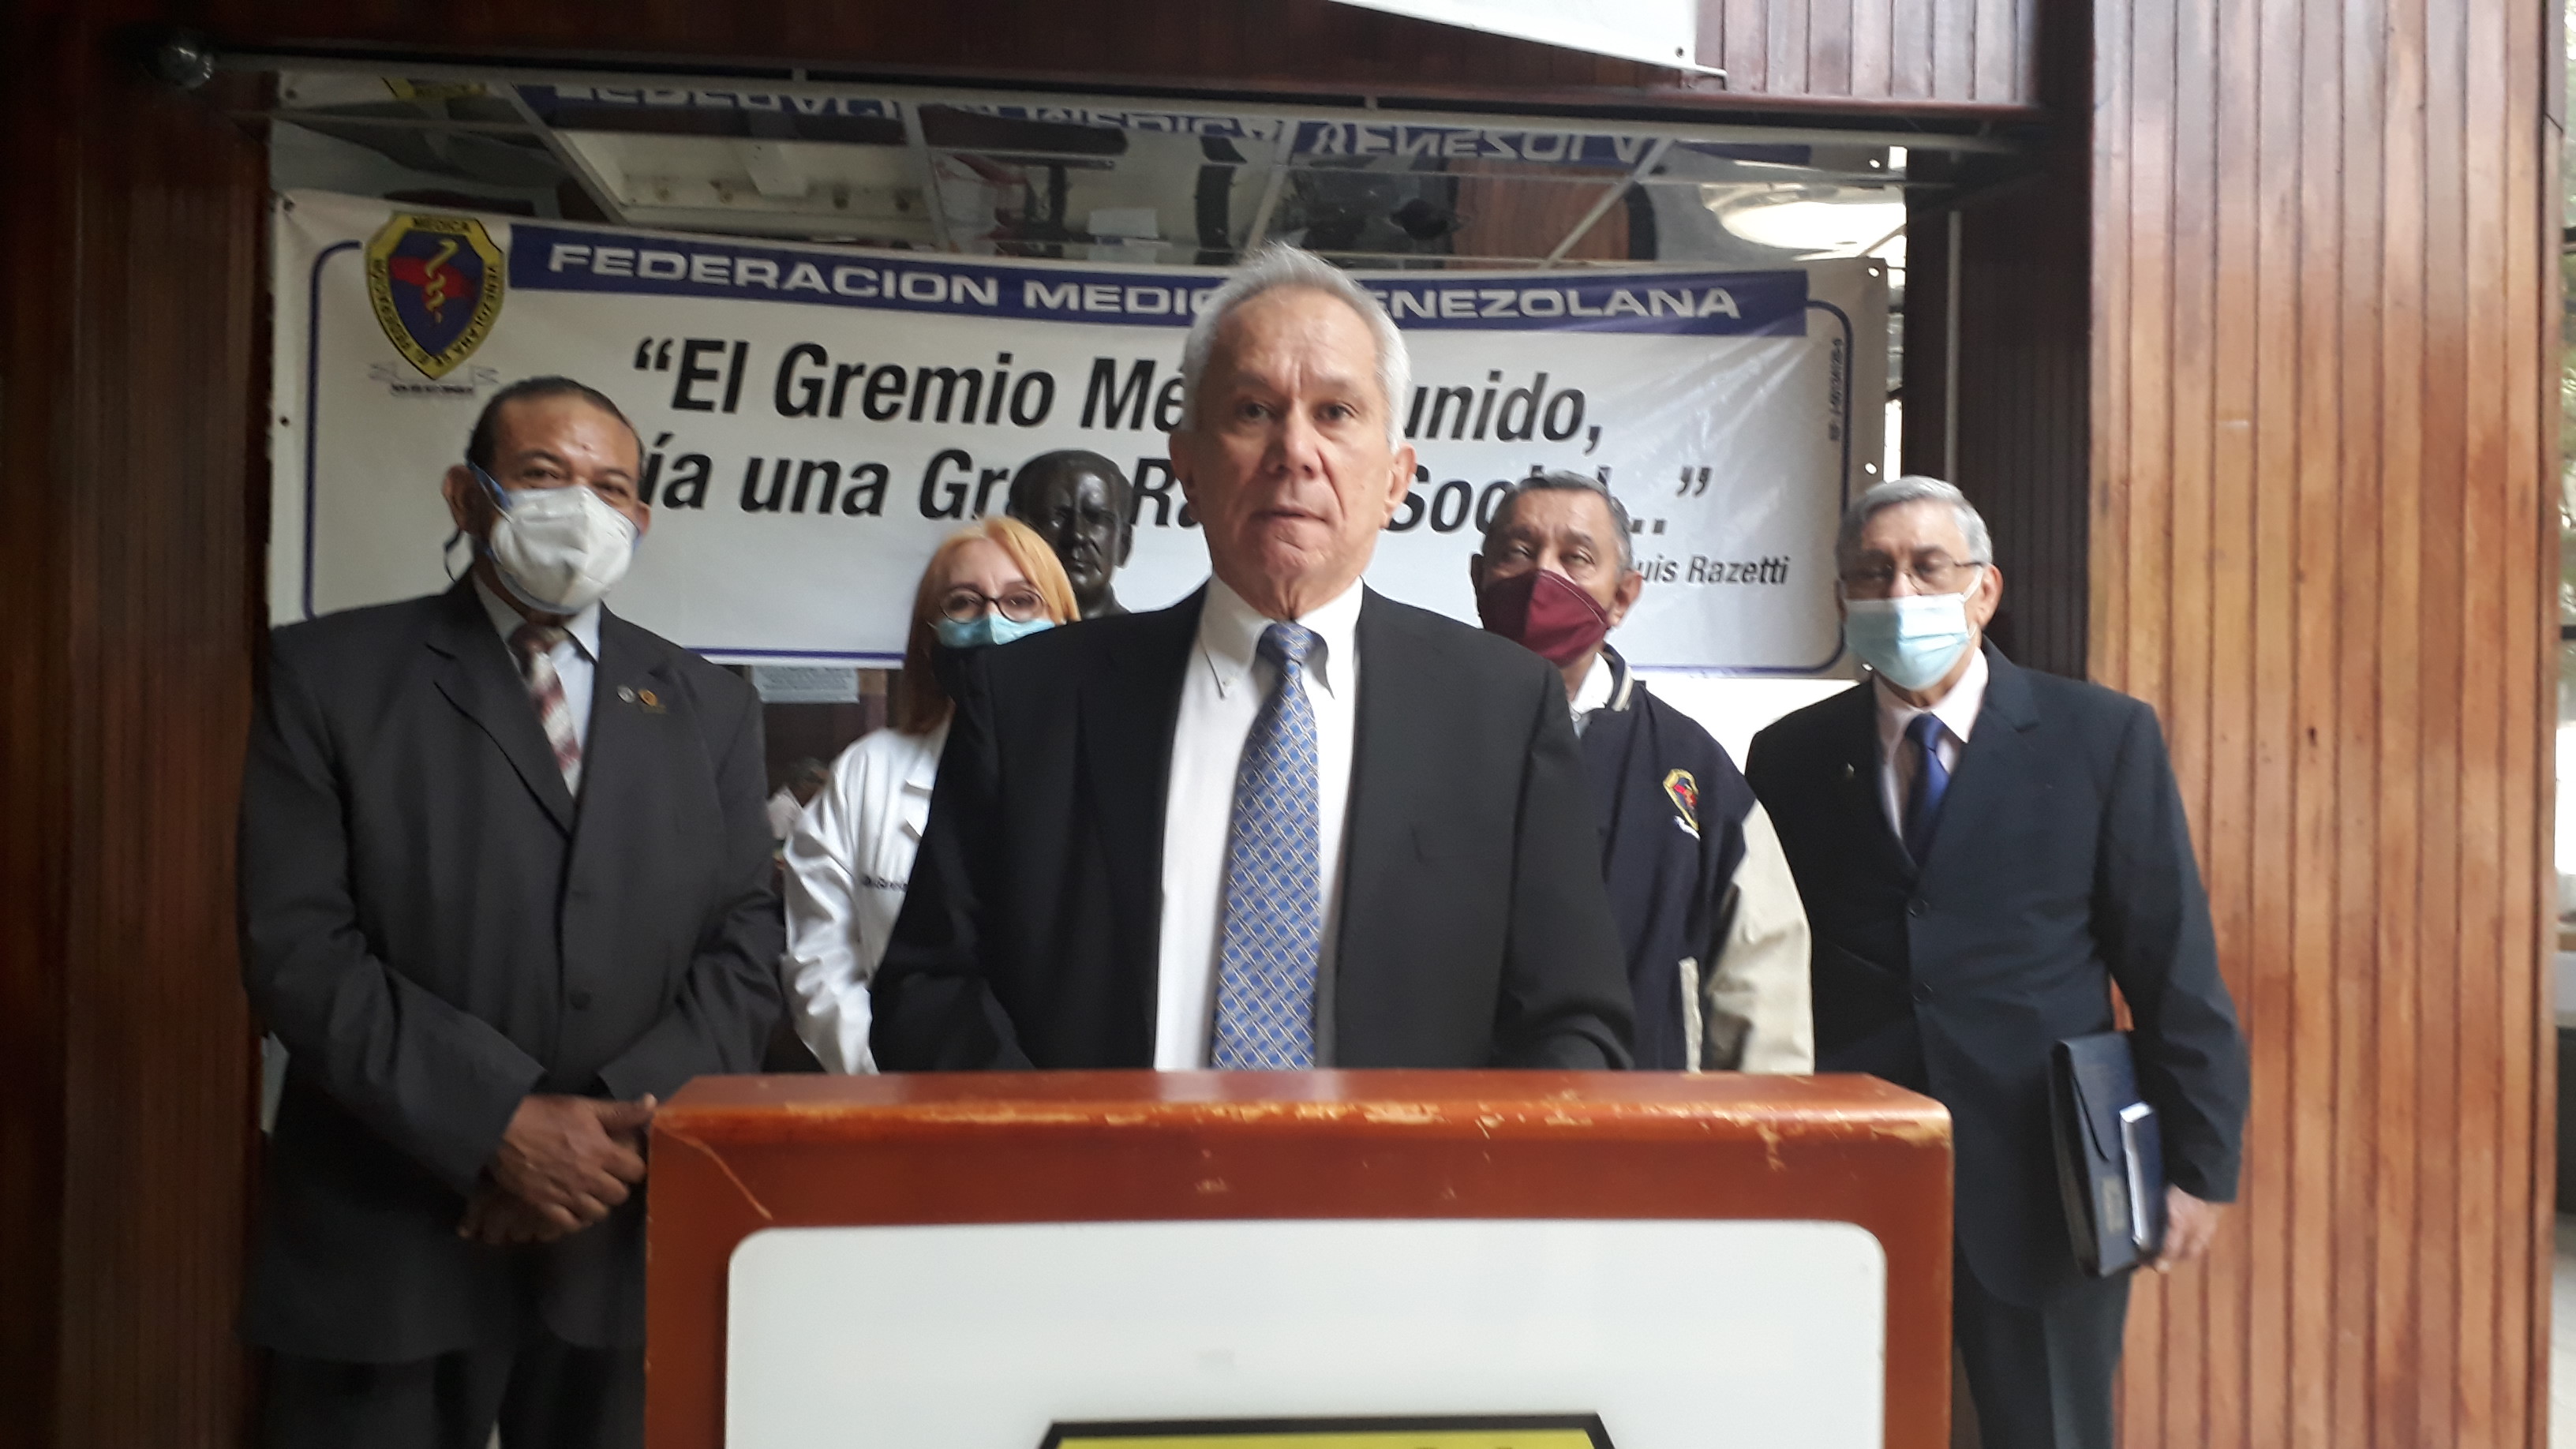 Federación Médica Venezolana denunció cierre técnico de los hospitales